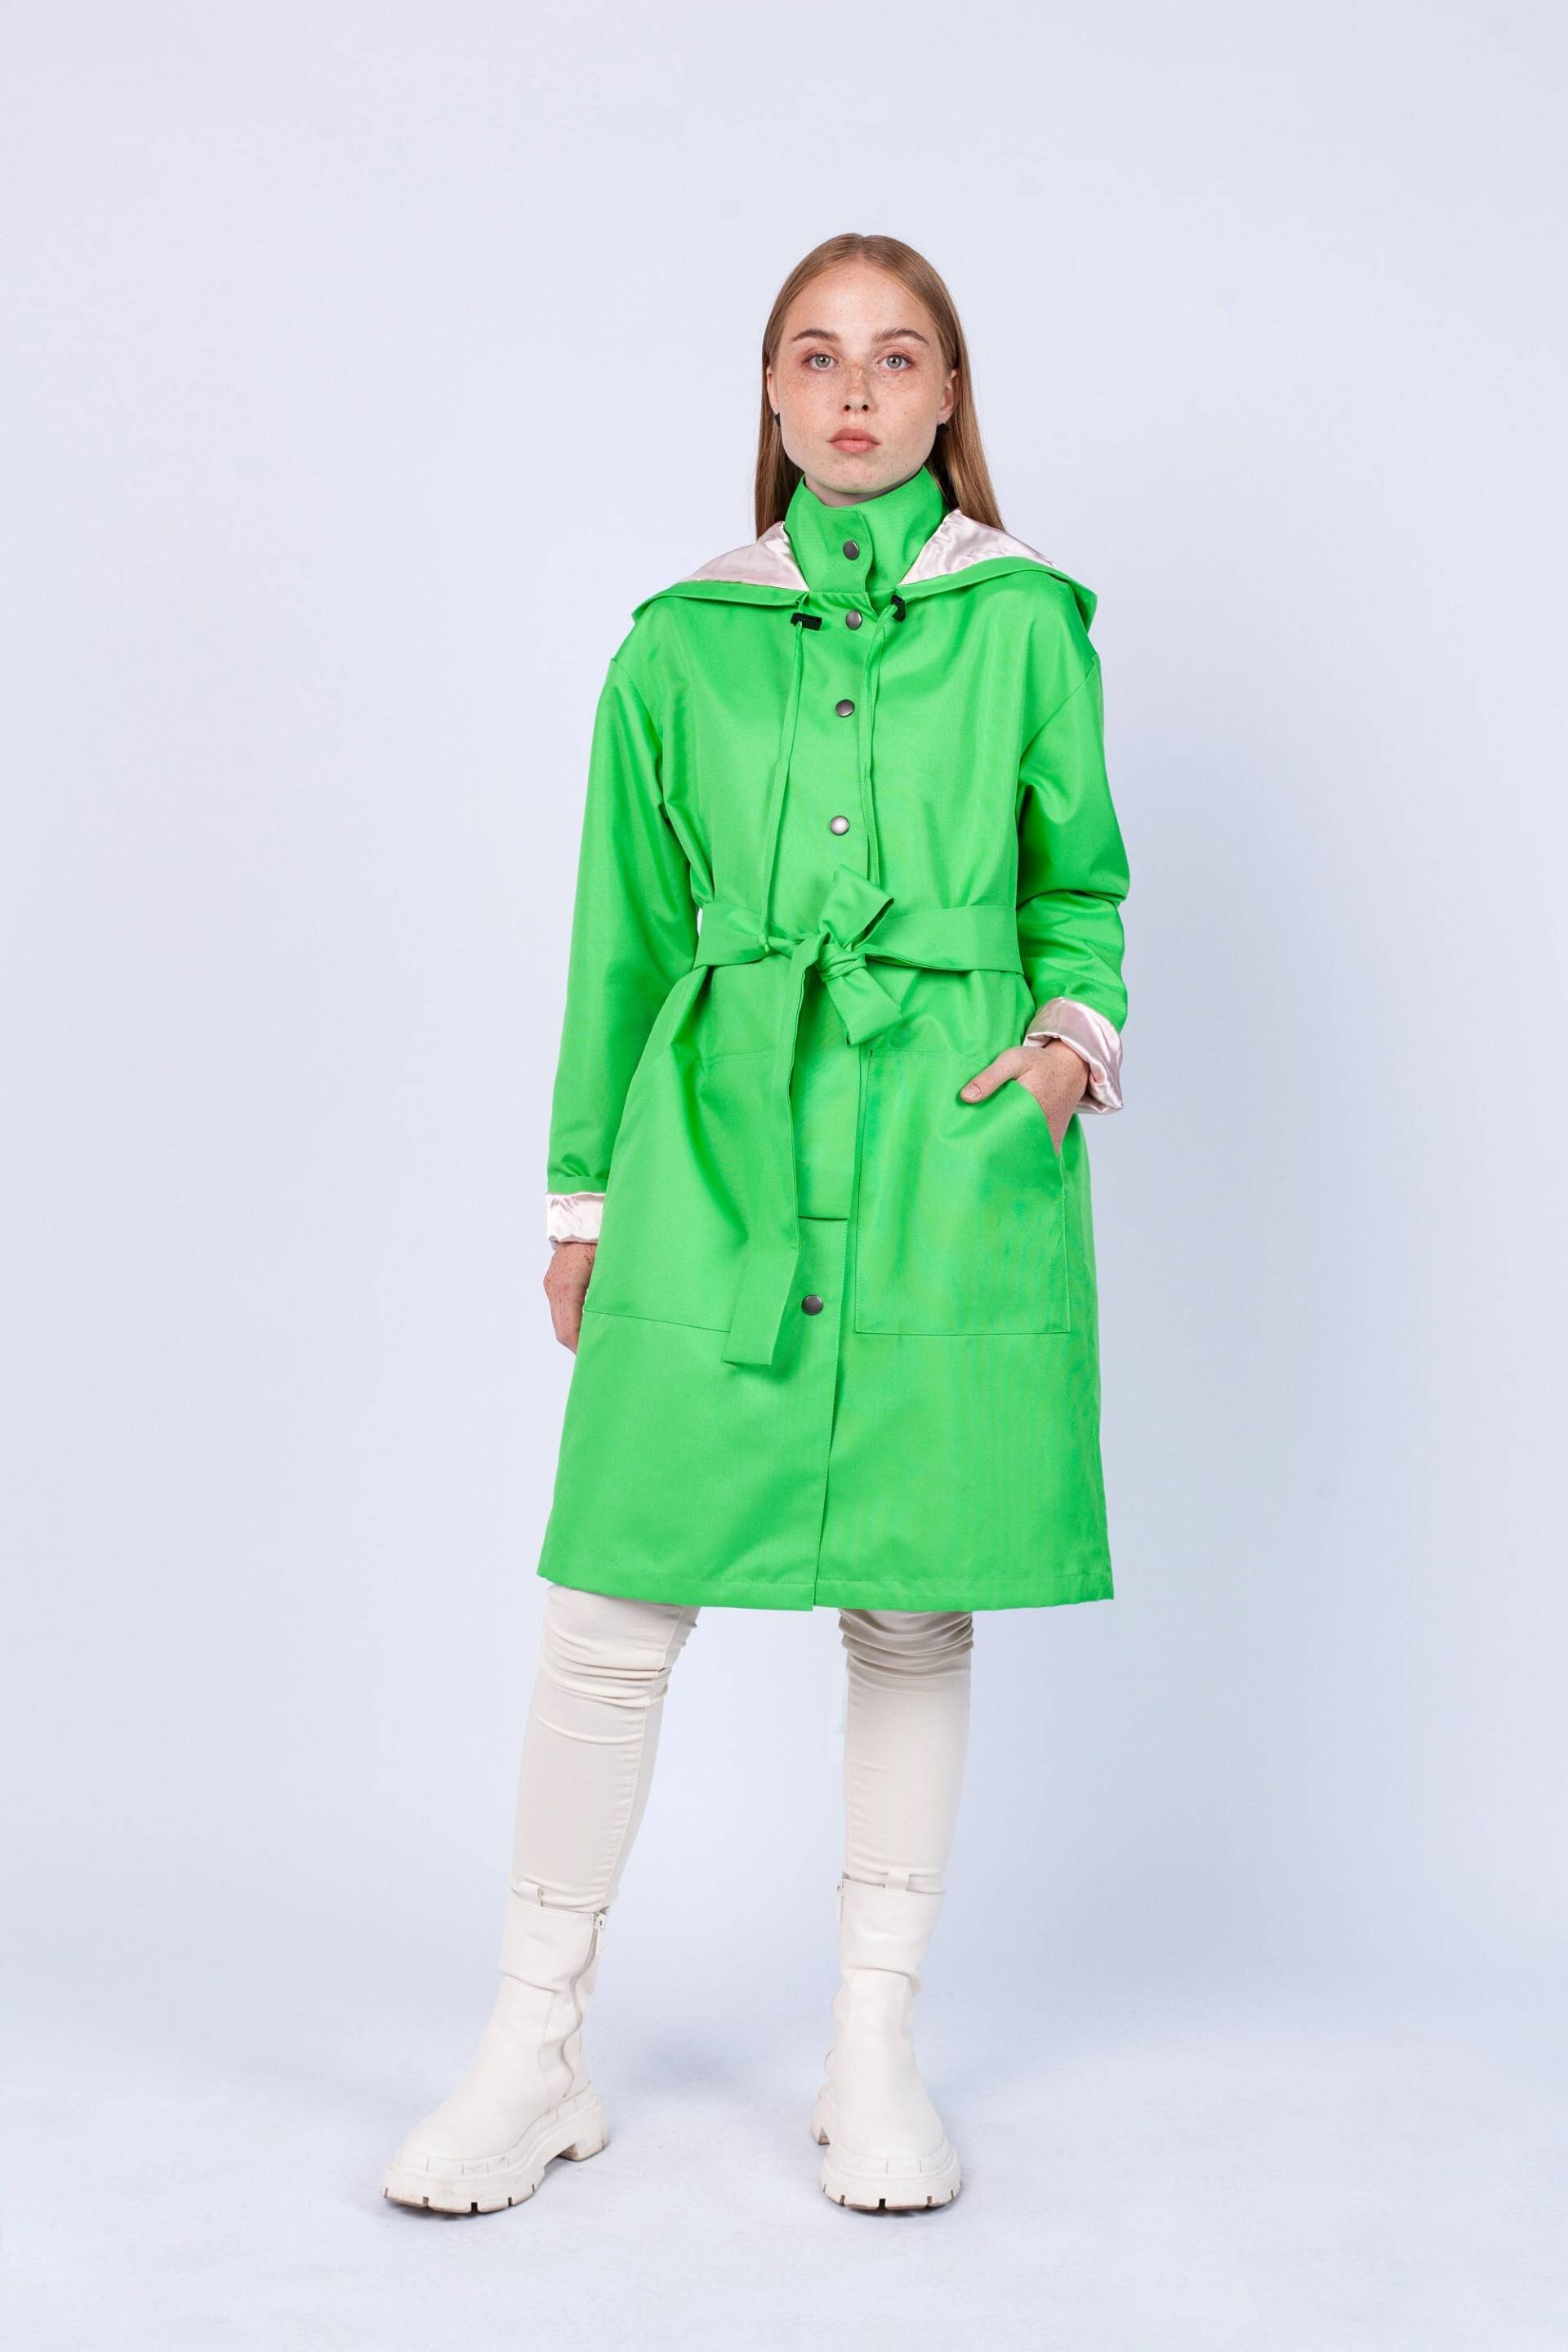 Frauen Bright Green Fashion Einzigartige Regenmantel Mit Gürtel "Honduras" 684 von RaincoatsToteBags